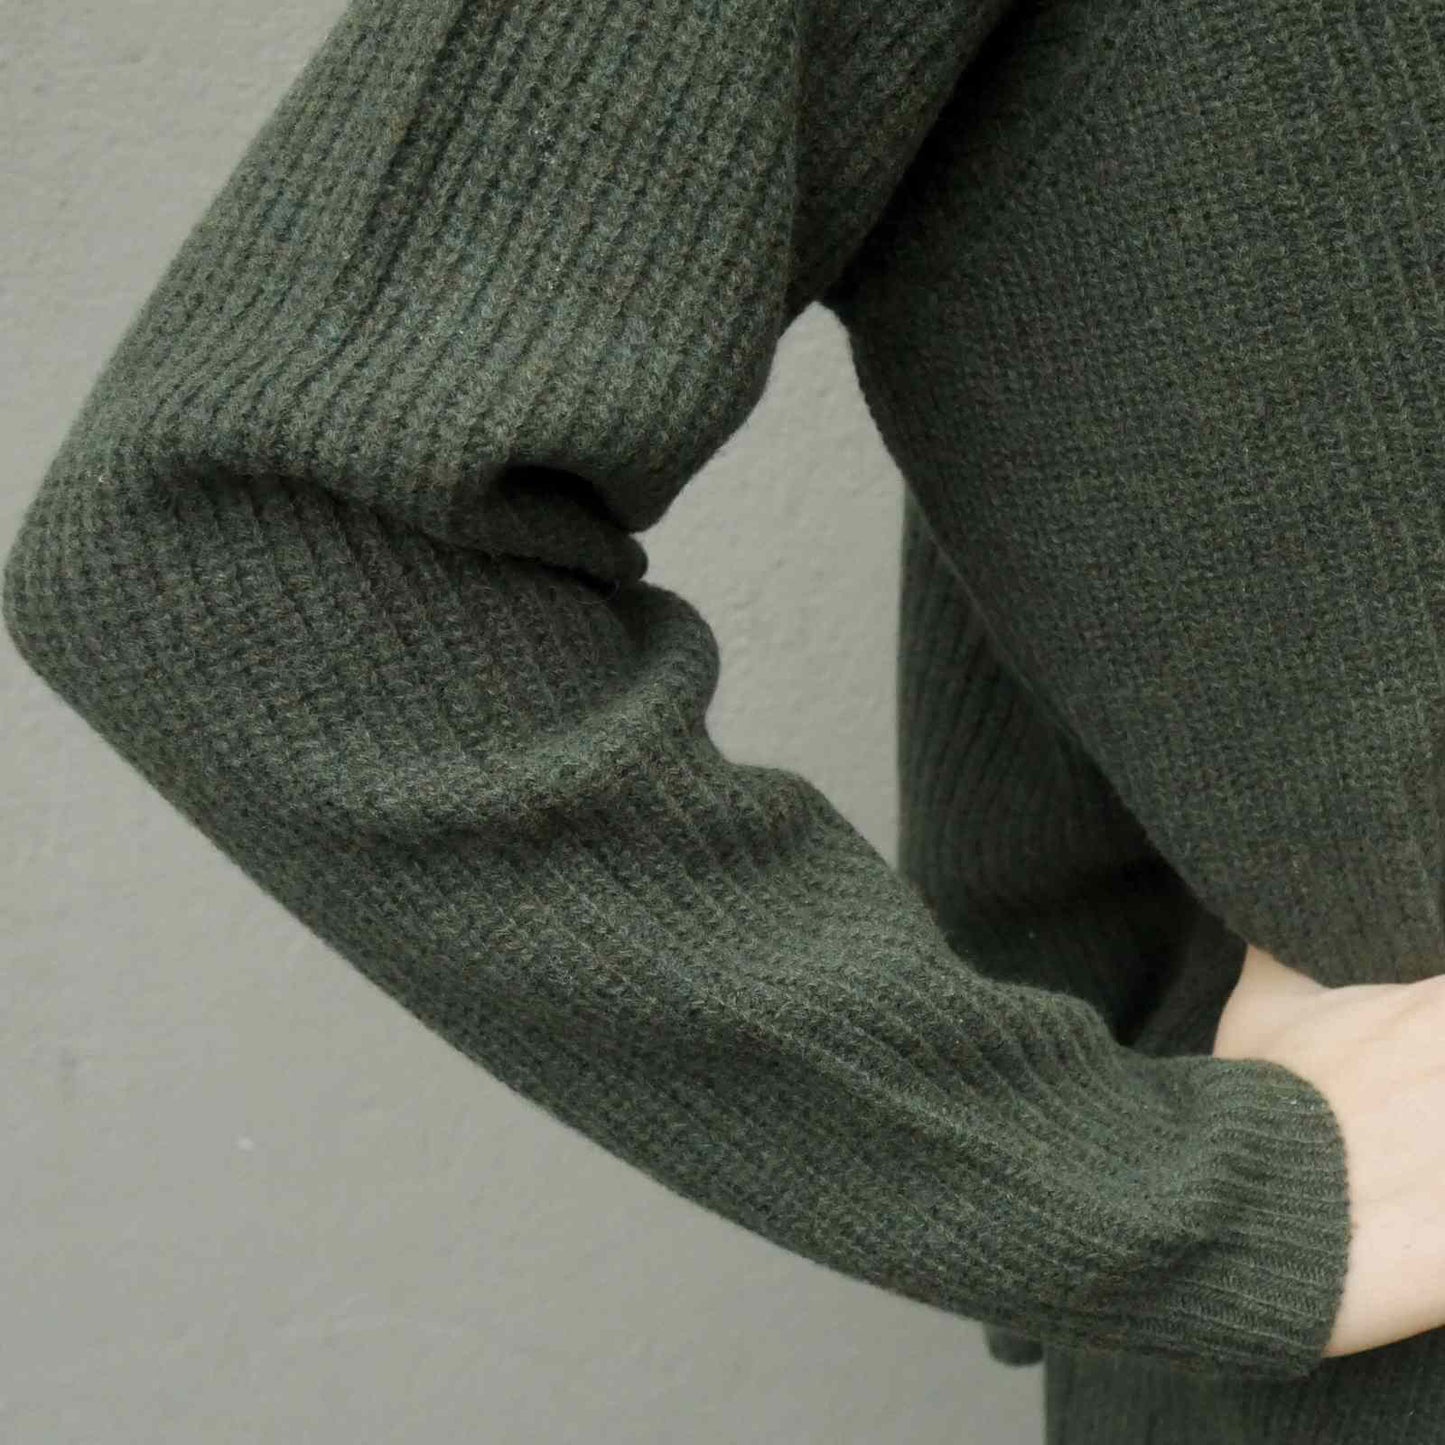 Patent strik detalje på grøn merino uld trøje Lizz Basic fra Gorridsen